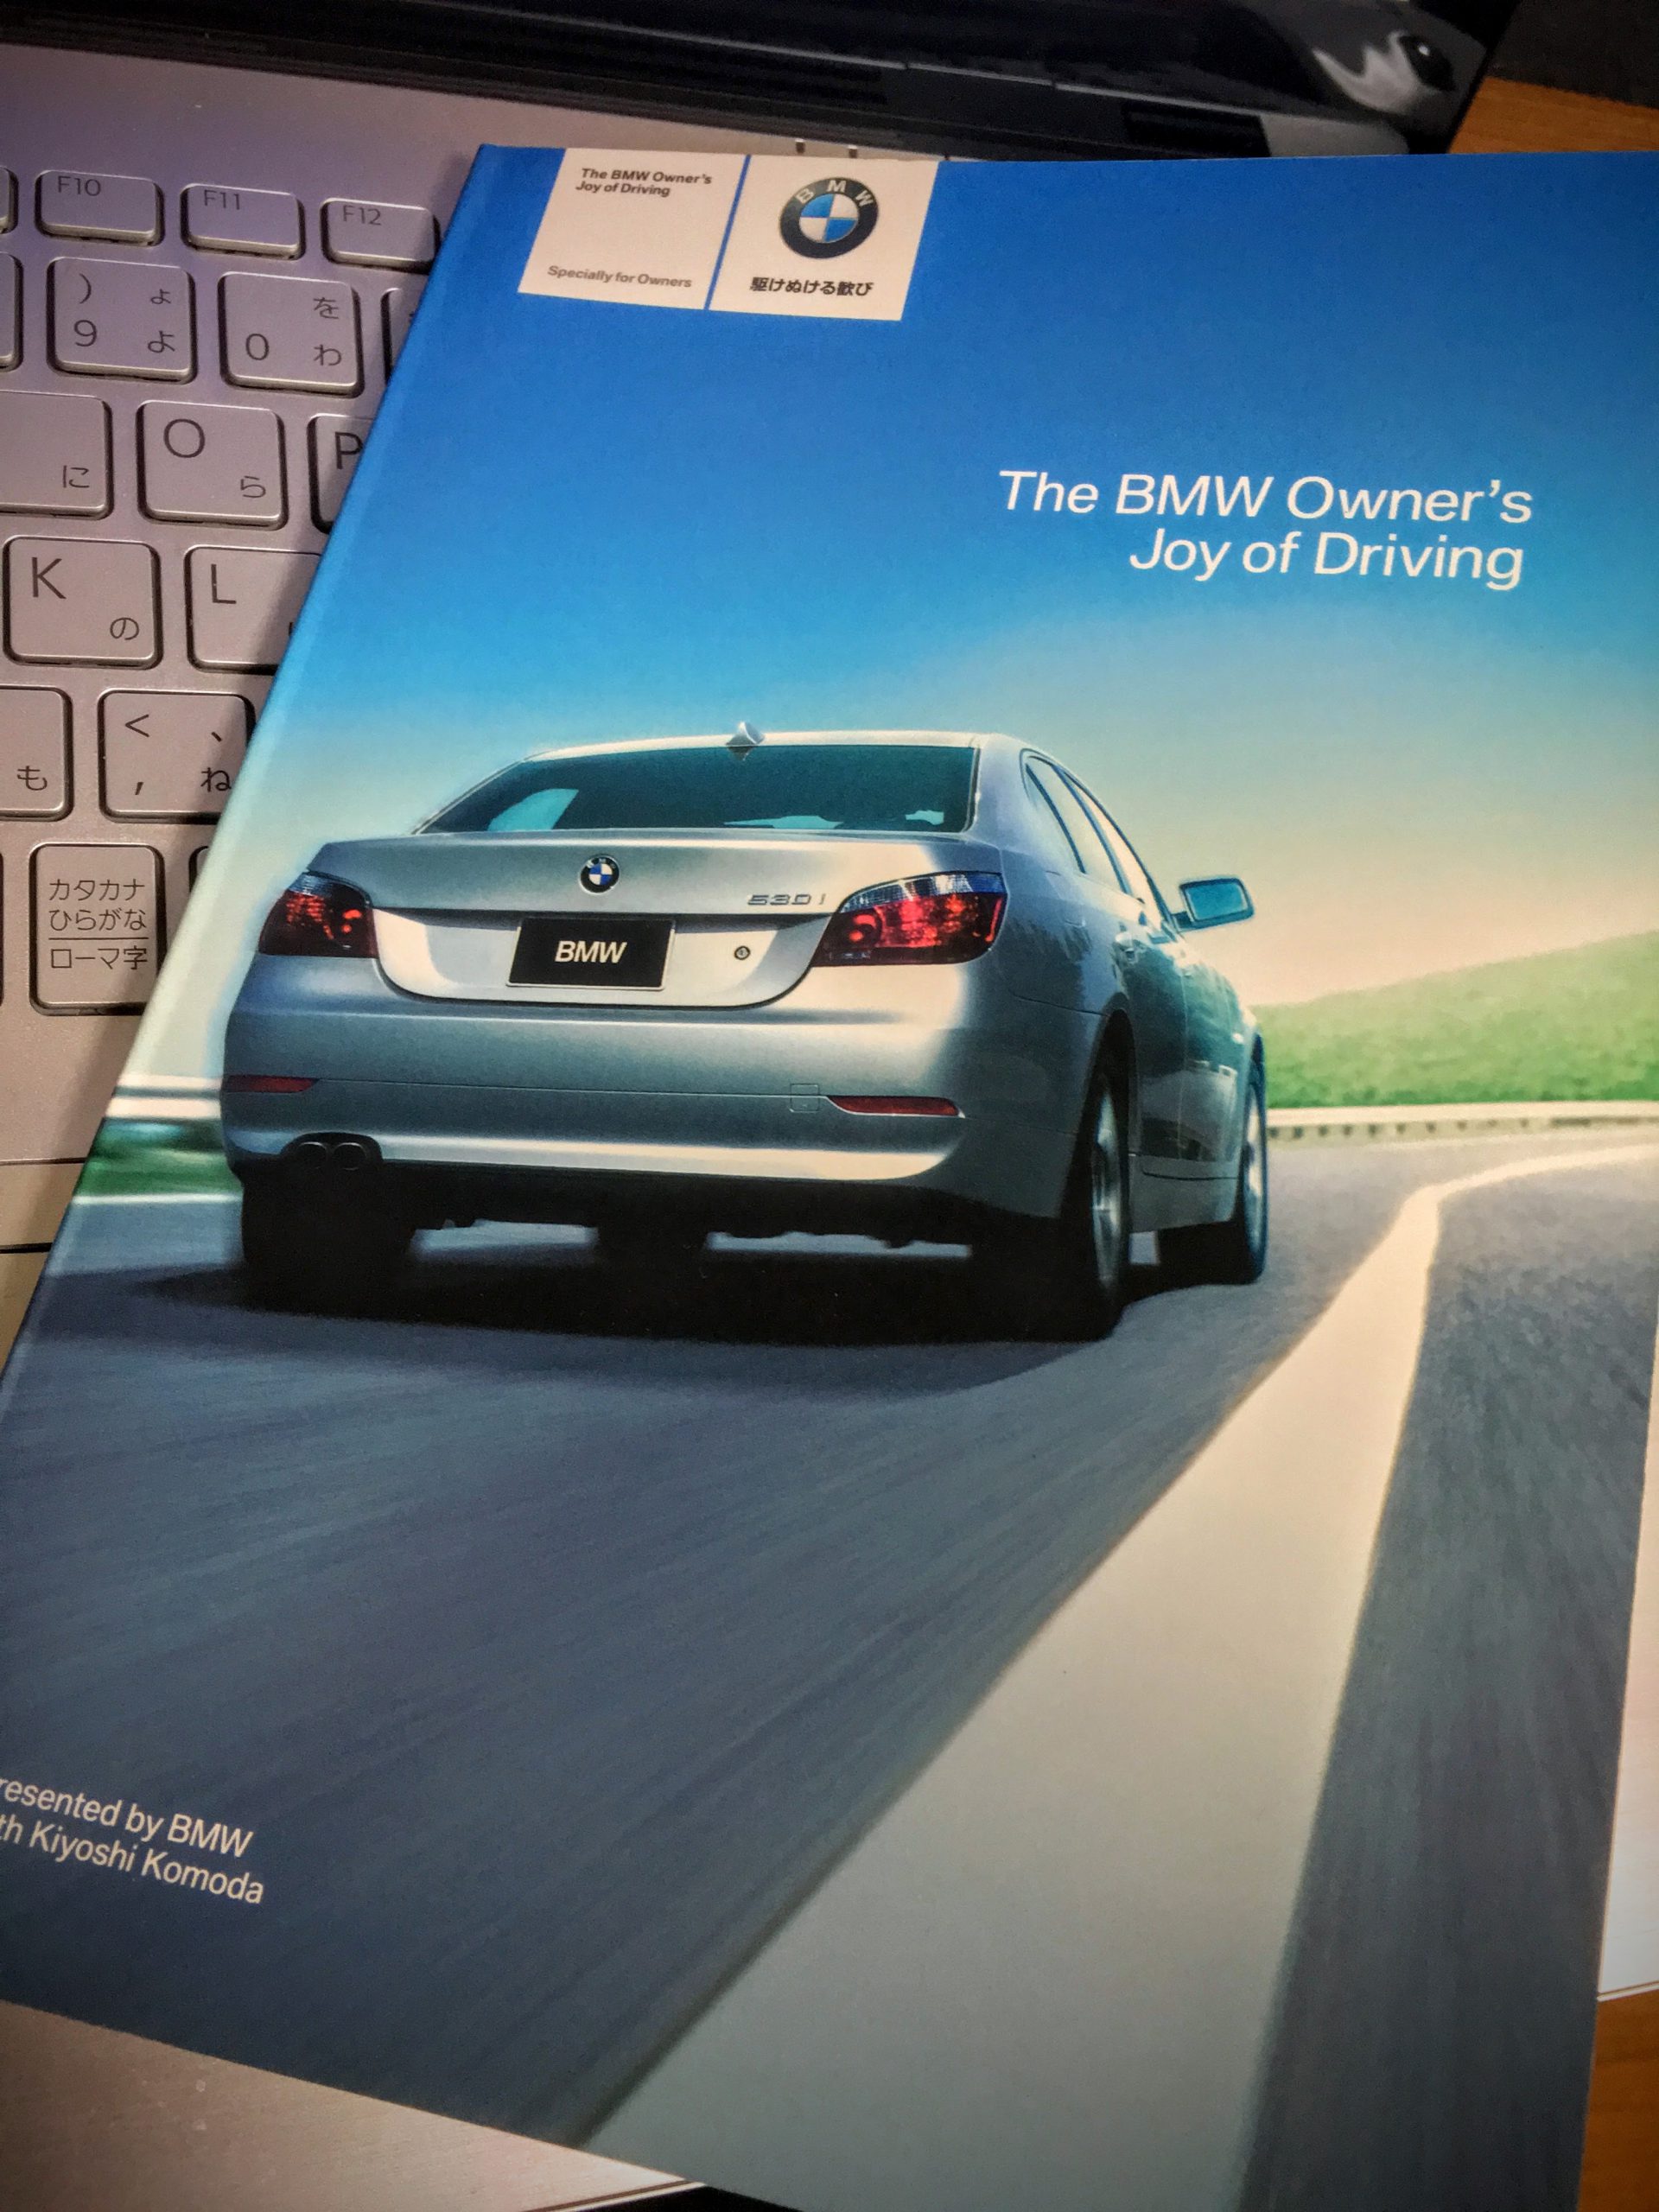 BMW１シリーズ(E87)購入時にもらった「The BMW Owner’s Joy of Driving」（ドライビング読本）が出てきたので読みなおしてみた＾＾